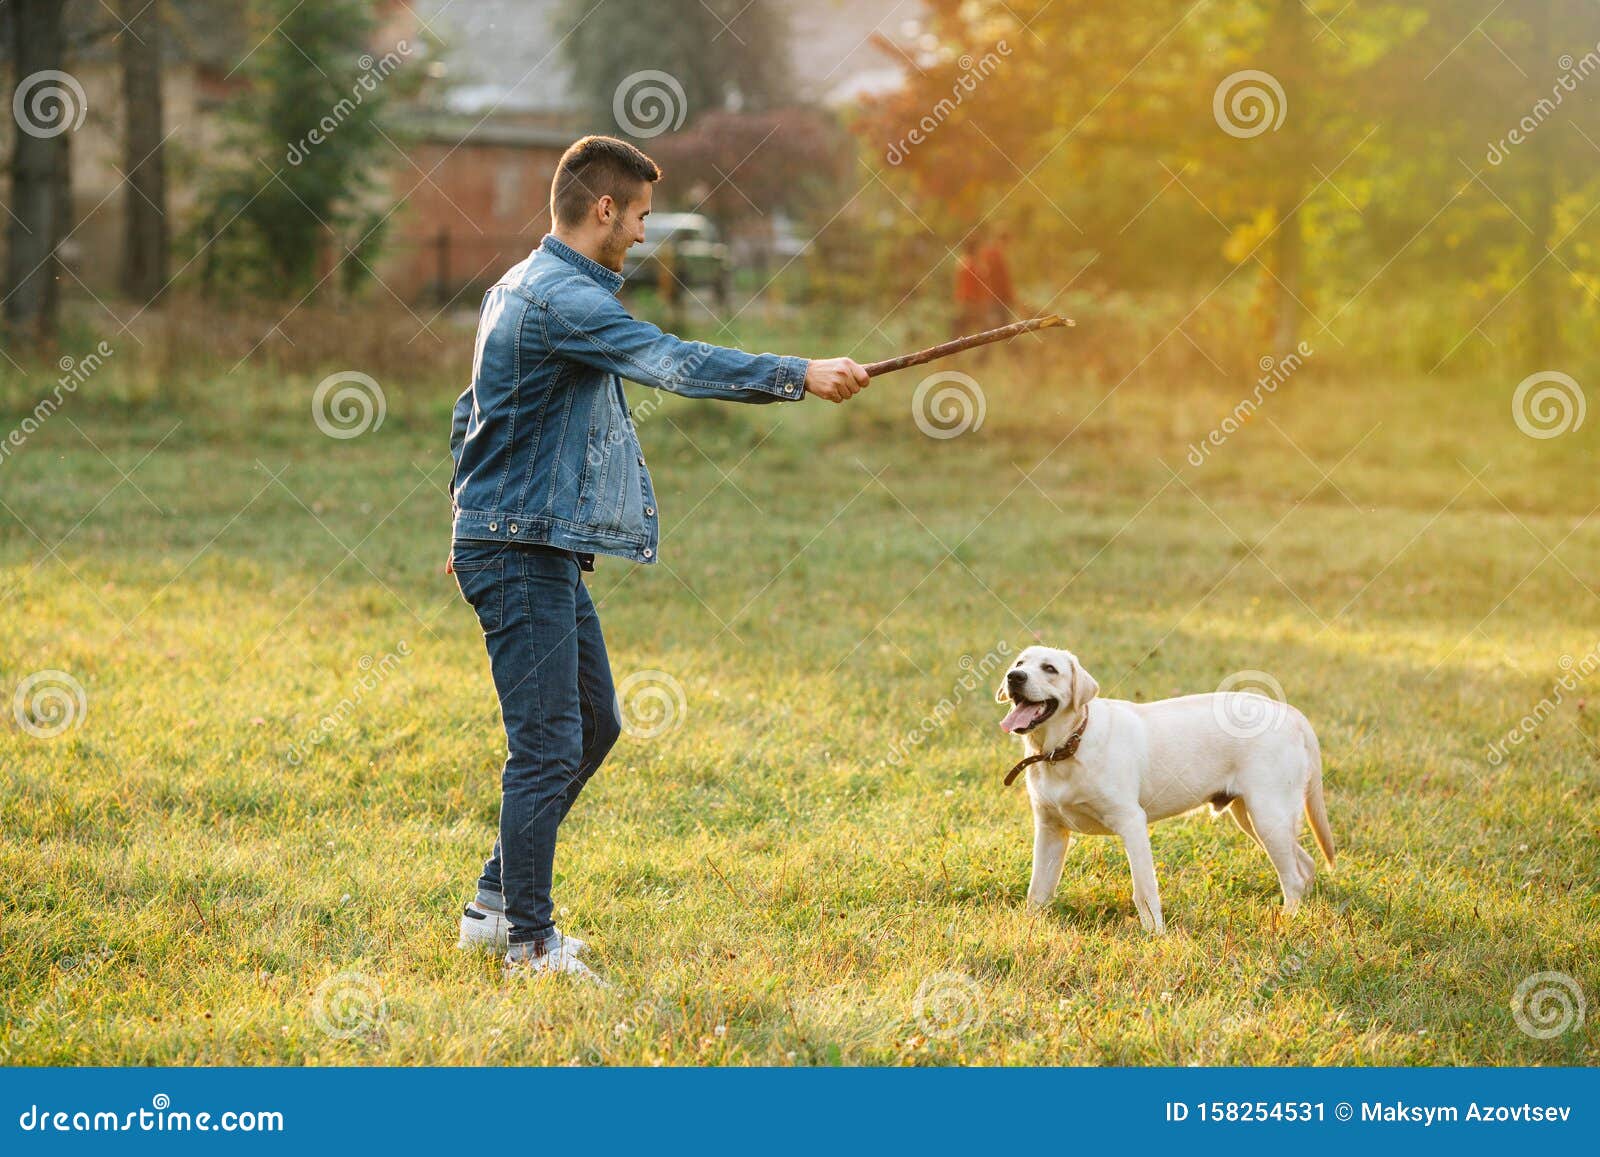 Кинь палочку. Кидает палку собаке. Мальчик кидает палку собаке. Парень кидает палку собаке. Собака играет с палочкой.